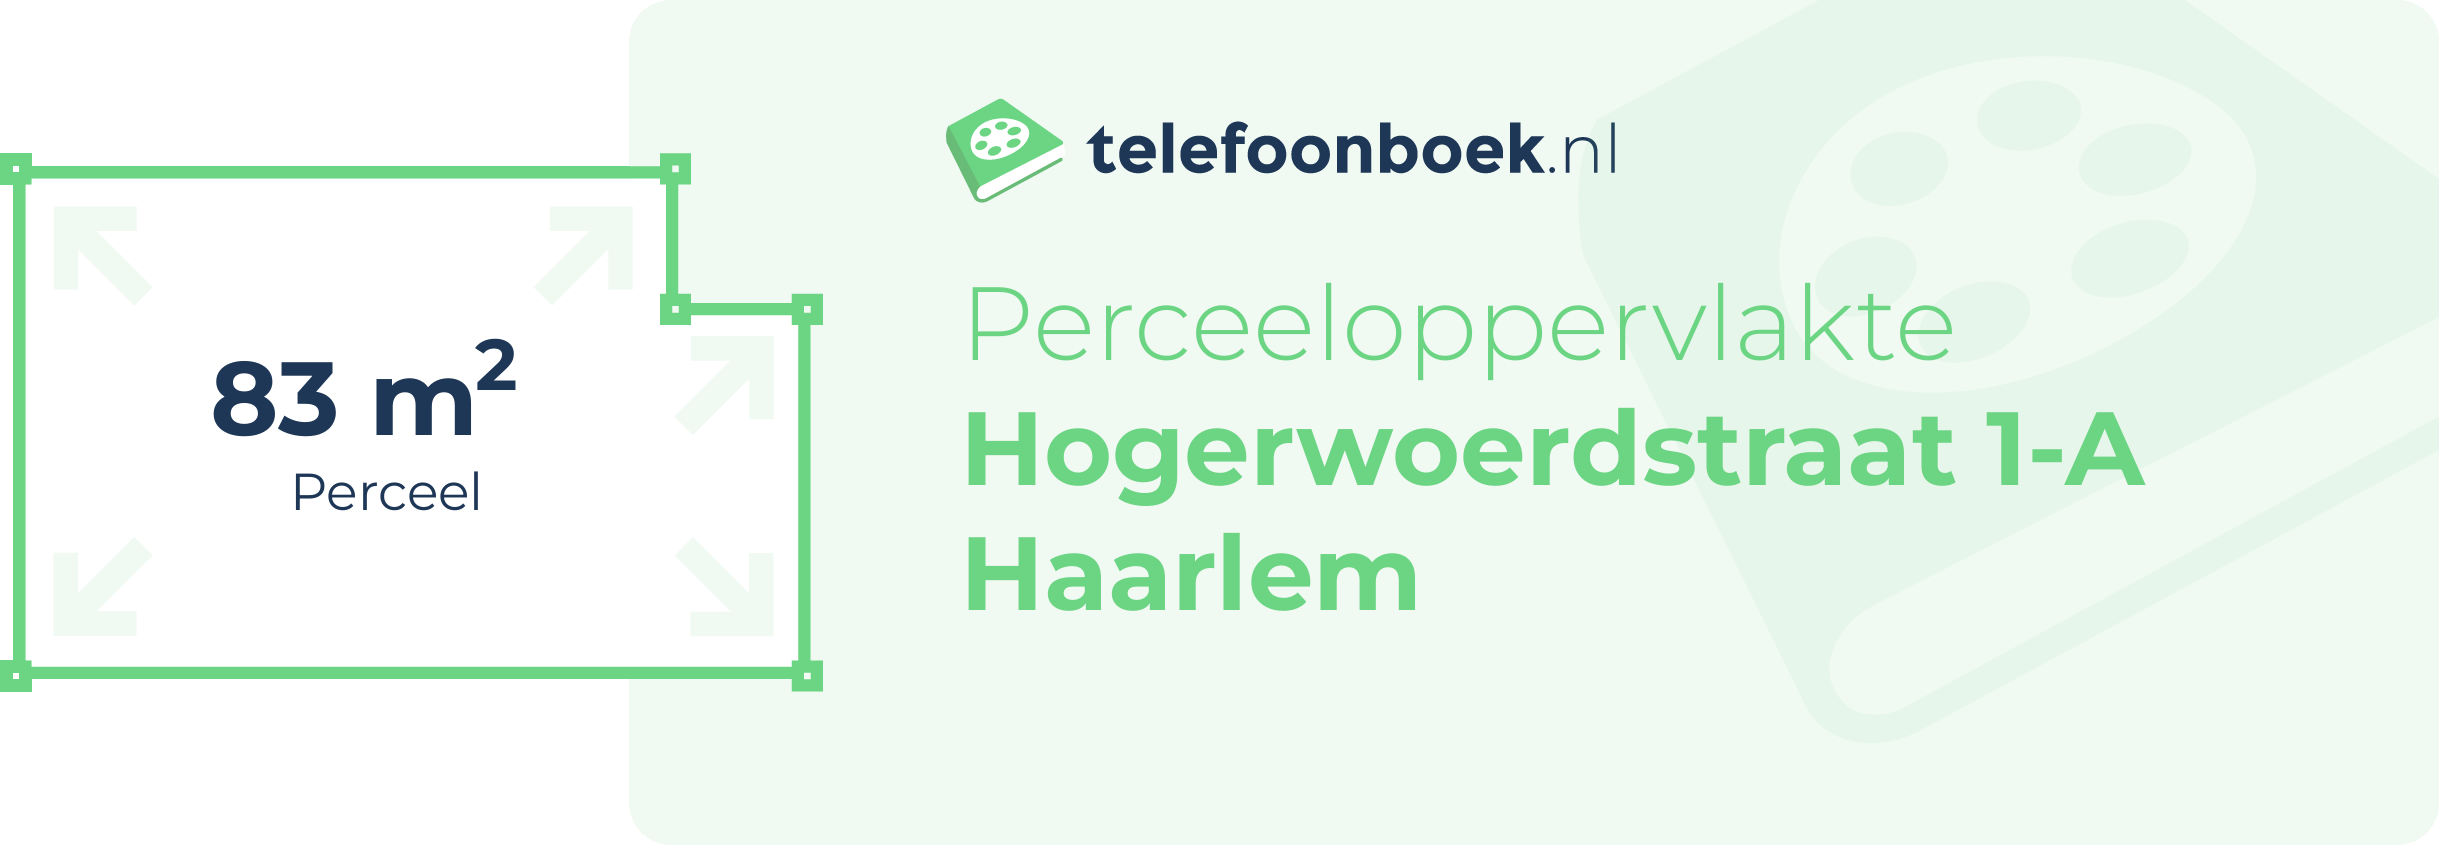 Perceeloppervlakte Hogerwoerdstraat 1-A Haarlem